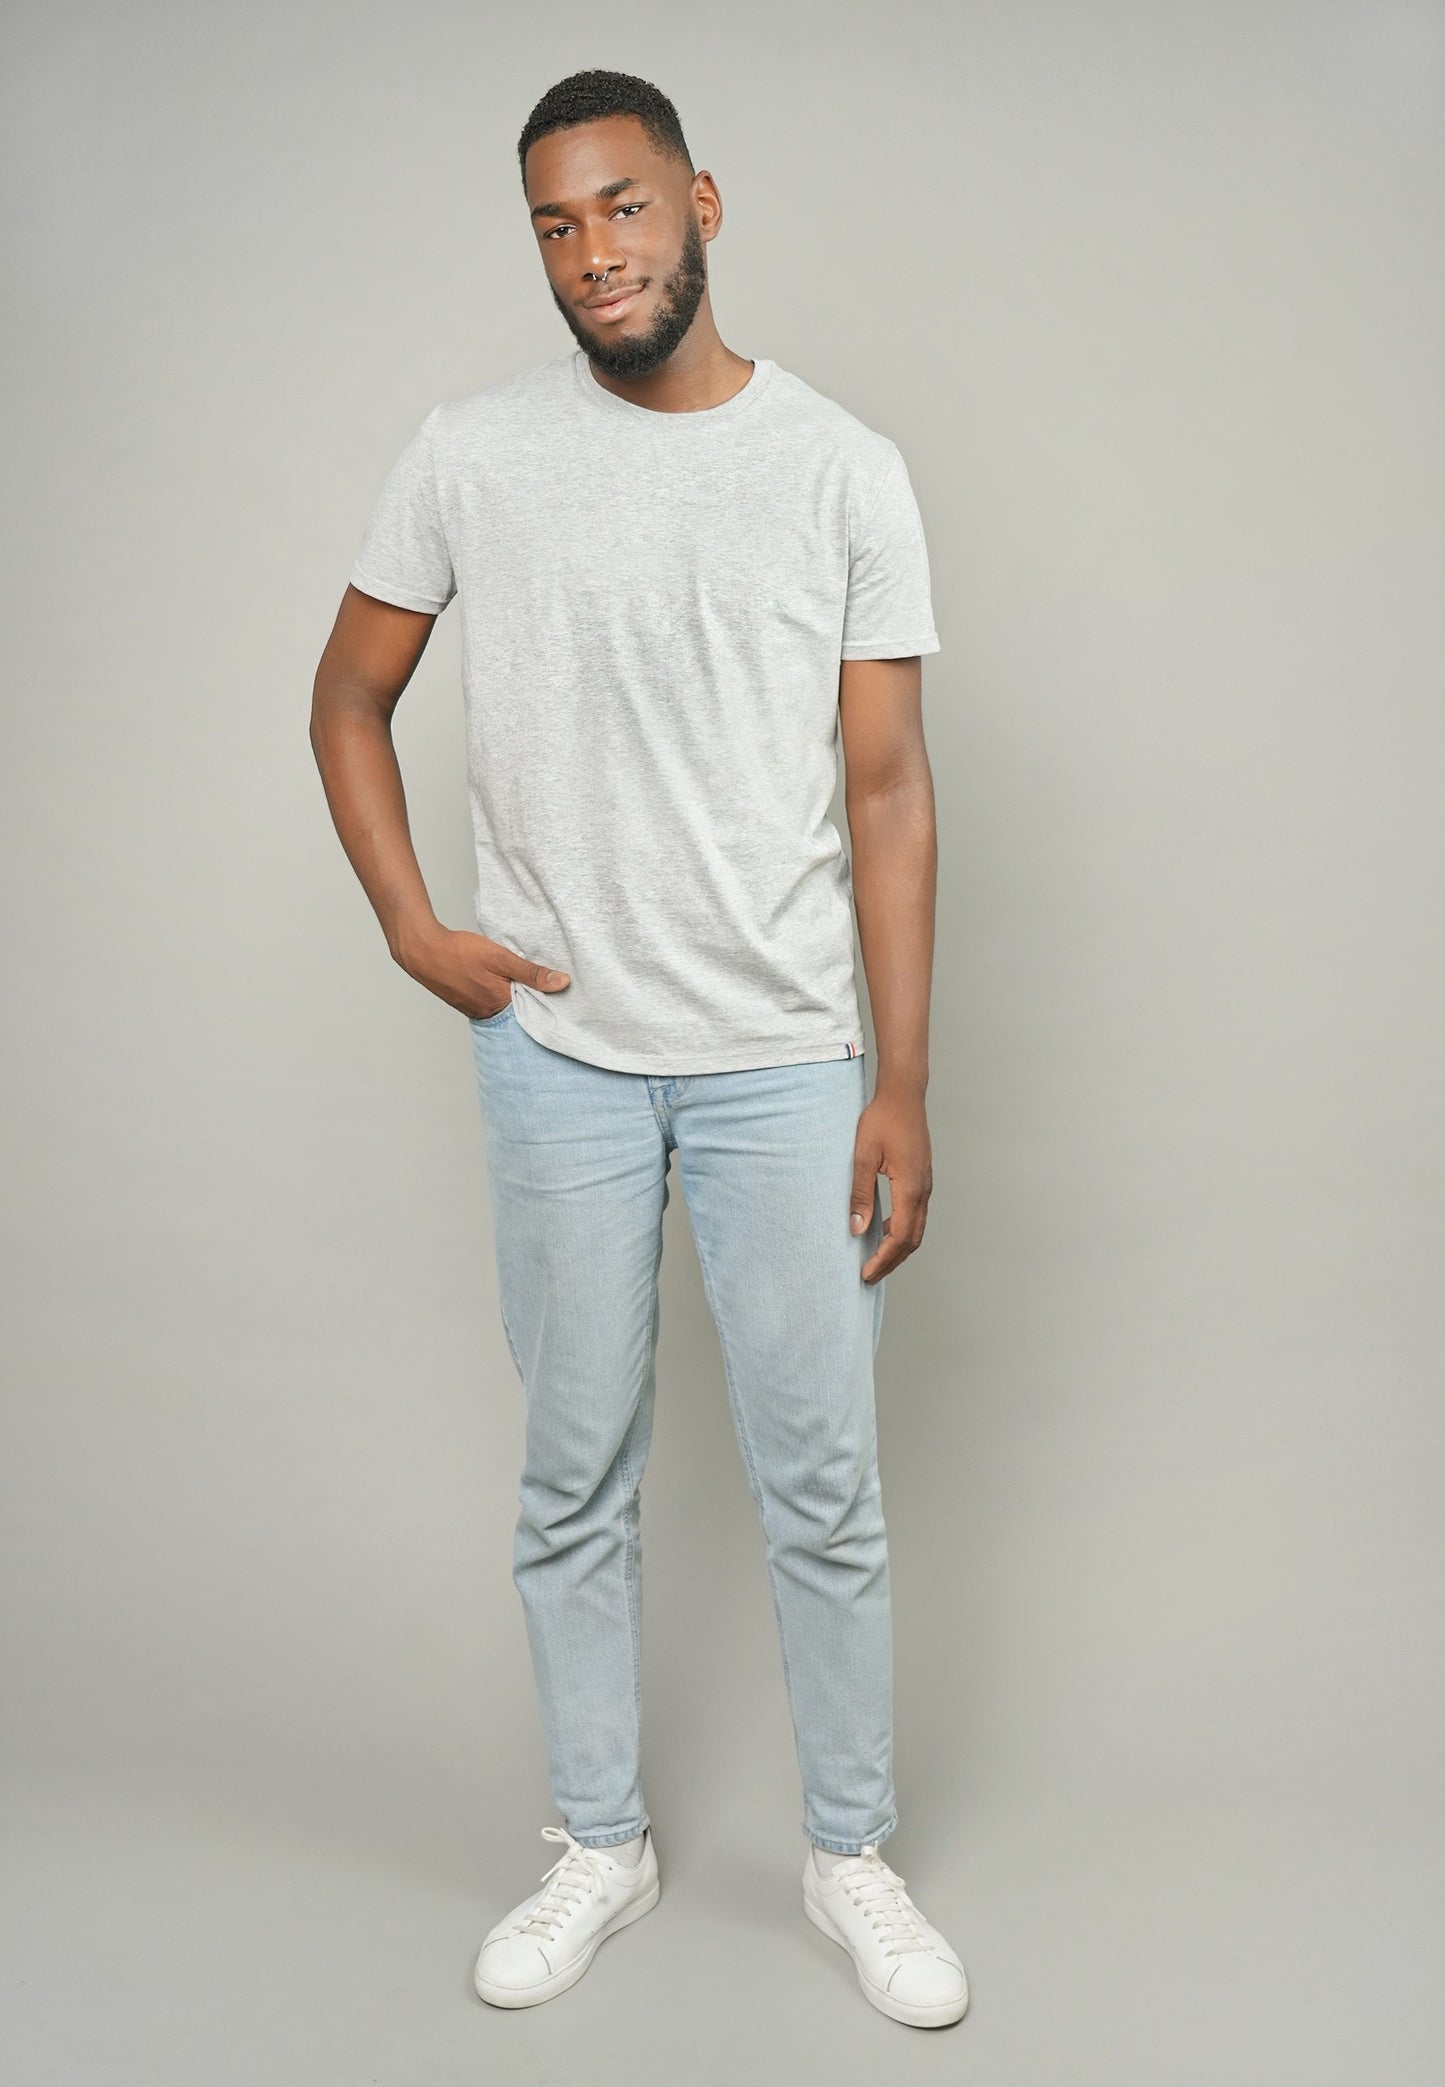 Grey Cotton T-Shirt | Classis Grey T-Shirt | Erverte Paris